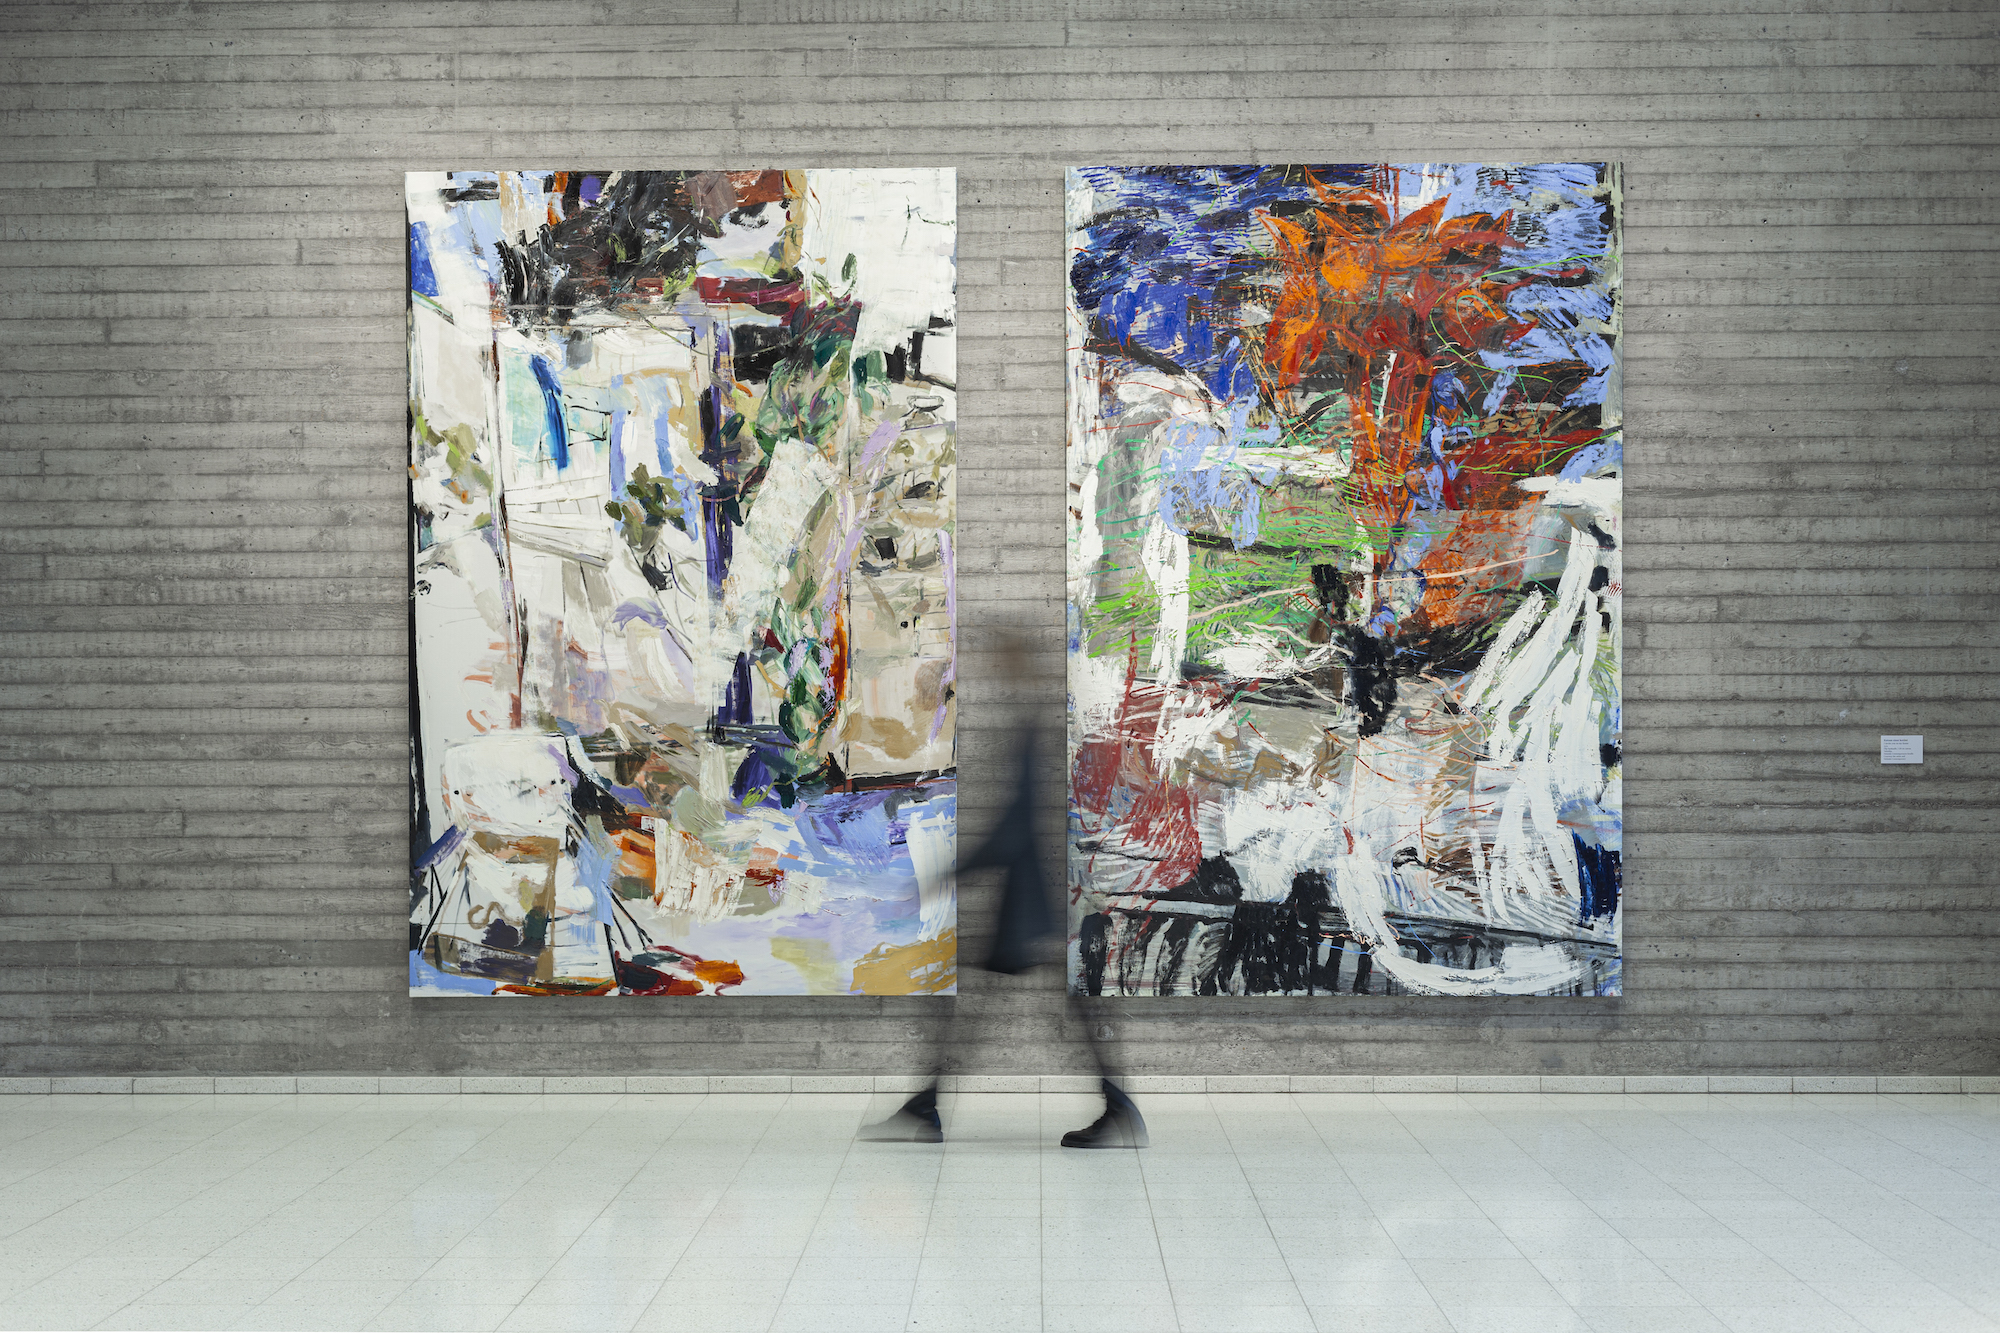 Kaksi isoa värikästä abstraktia maalausta on asetettu harmaalle seinälle. Sumea ihmisen hahmo kävelee maalausten ohi, sijoitettuna kahden kyseisen maalauksen väliin.